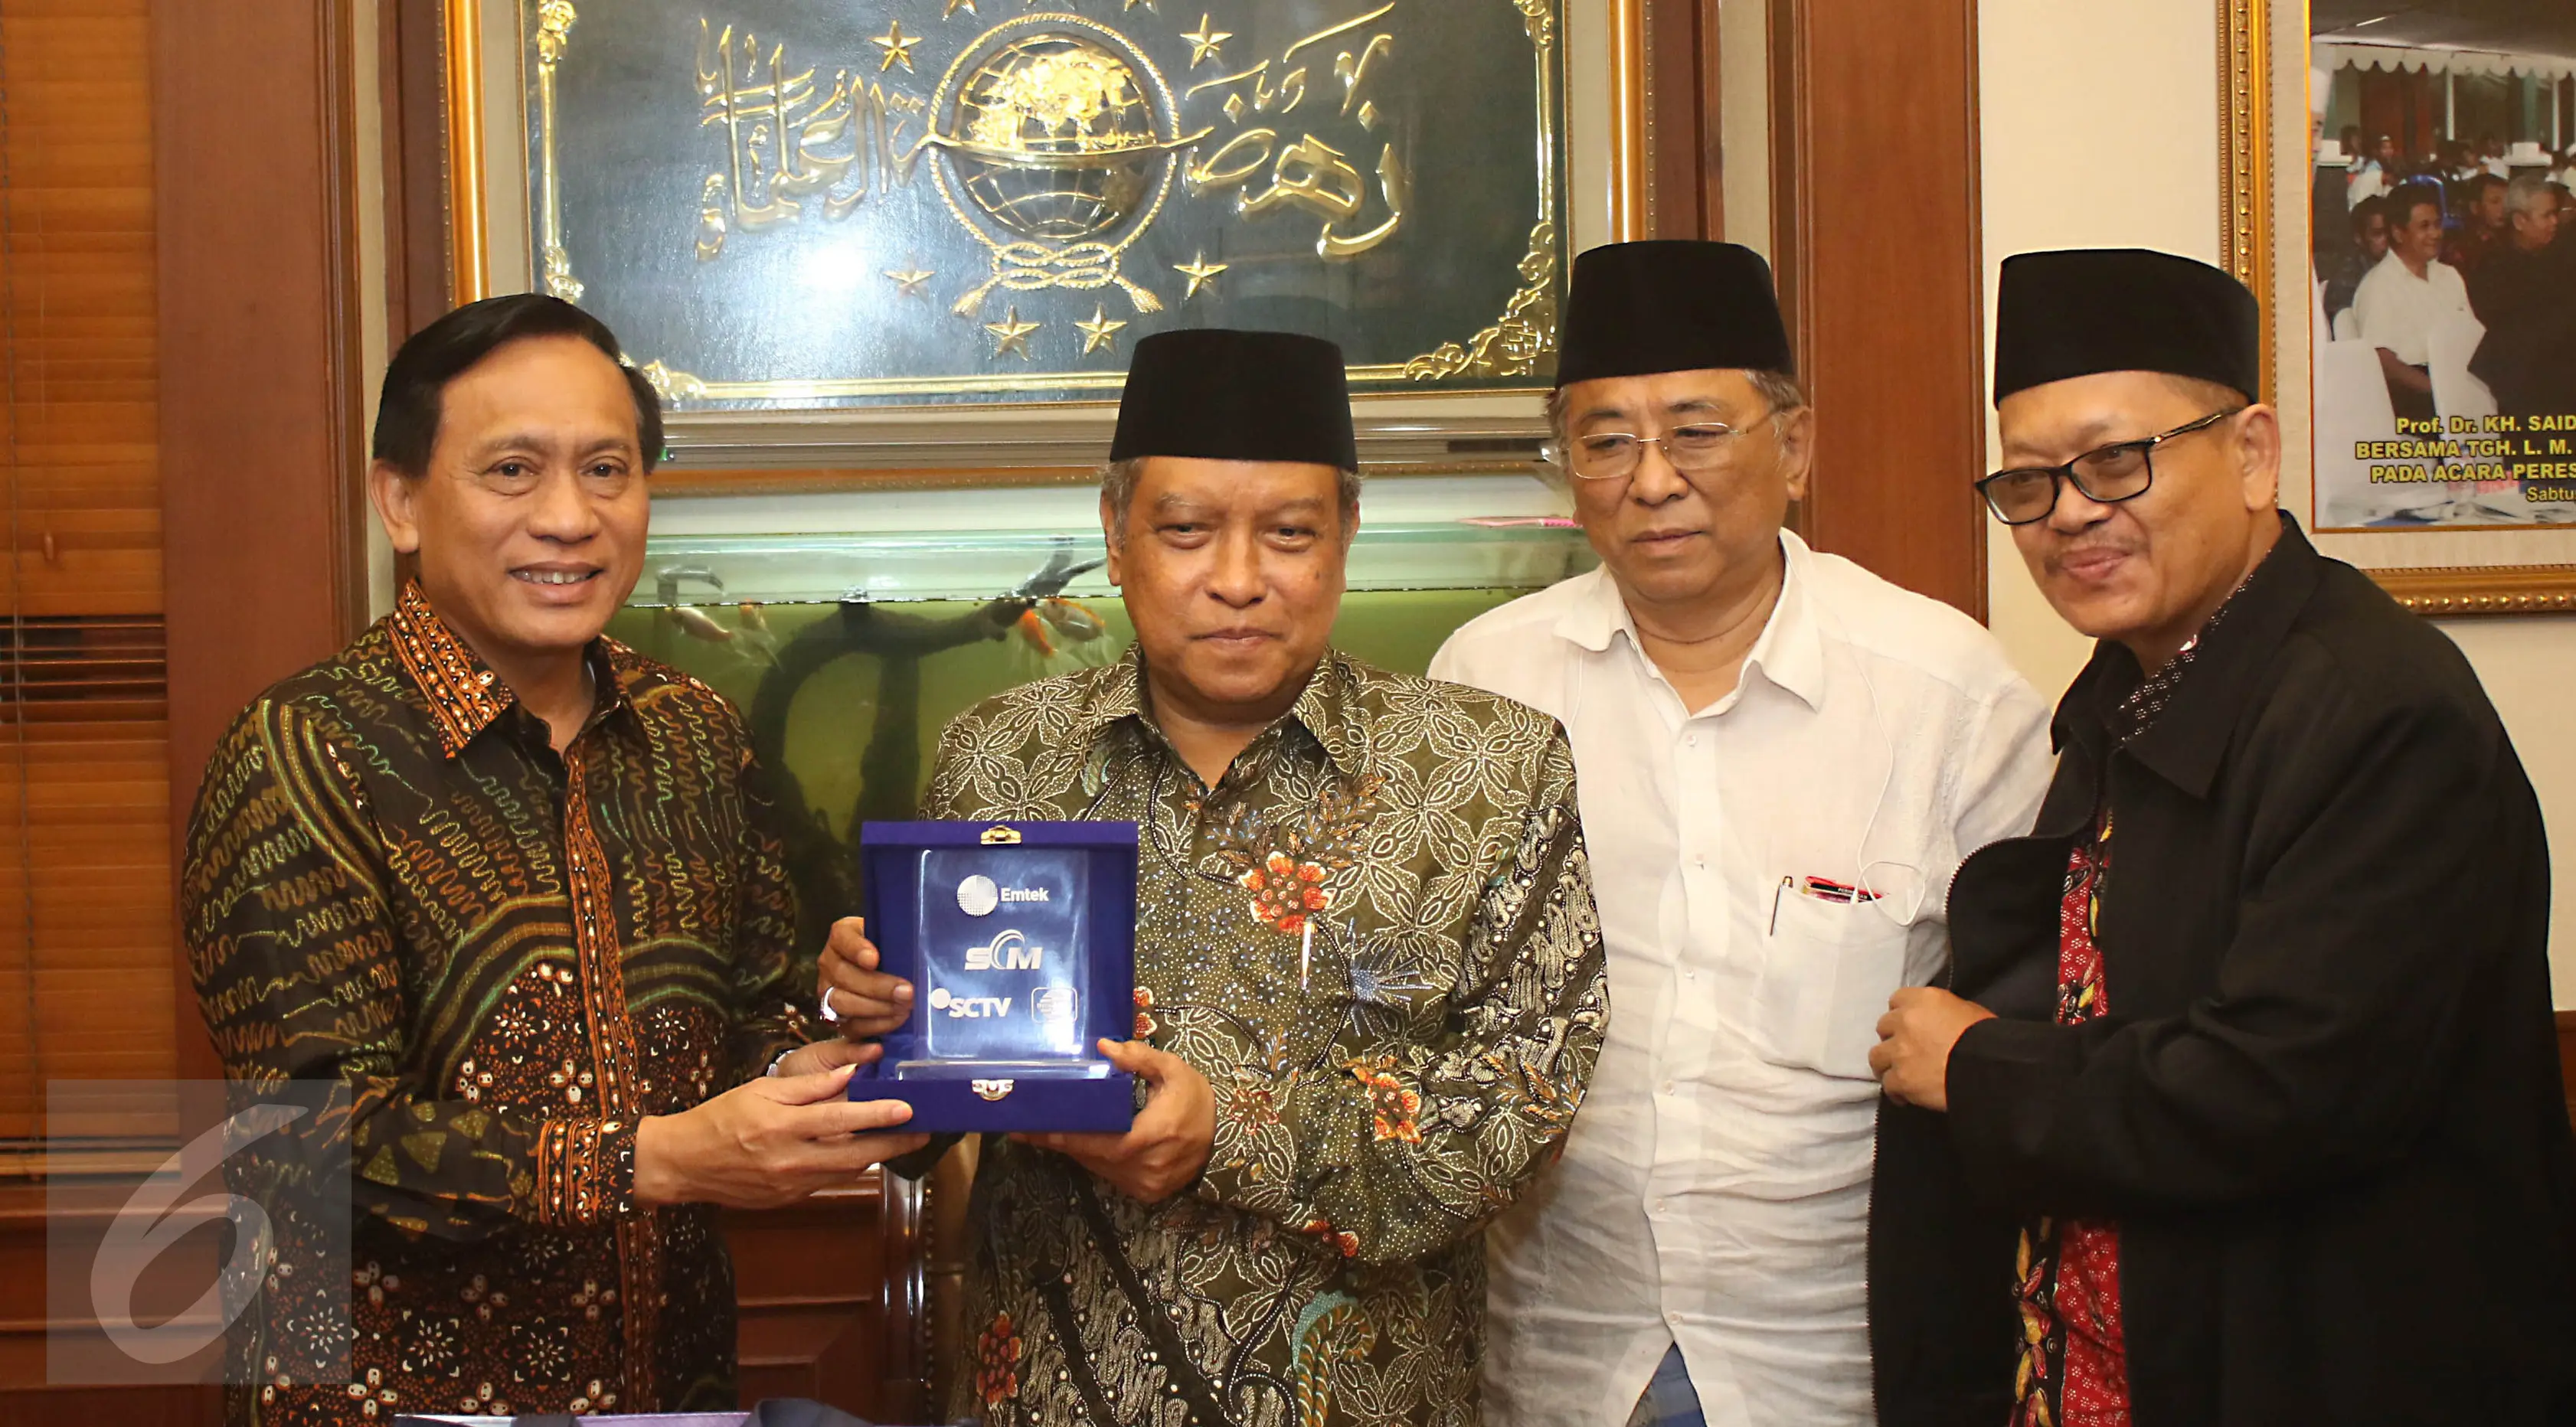 Direktur Utama Indosiar Imam Sudjarwo memberikan cinderamata kepada Ketua Umum PBNU Said Aqil Siradj di kantor PBNU Jakarta, Senin (17/4). Pertemuan EMTEK Grup dengan PBNU dalam rangka silaturahmi. (Liputan6.com/Angga Yuniar)